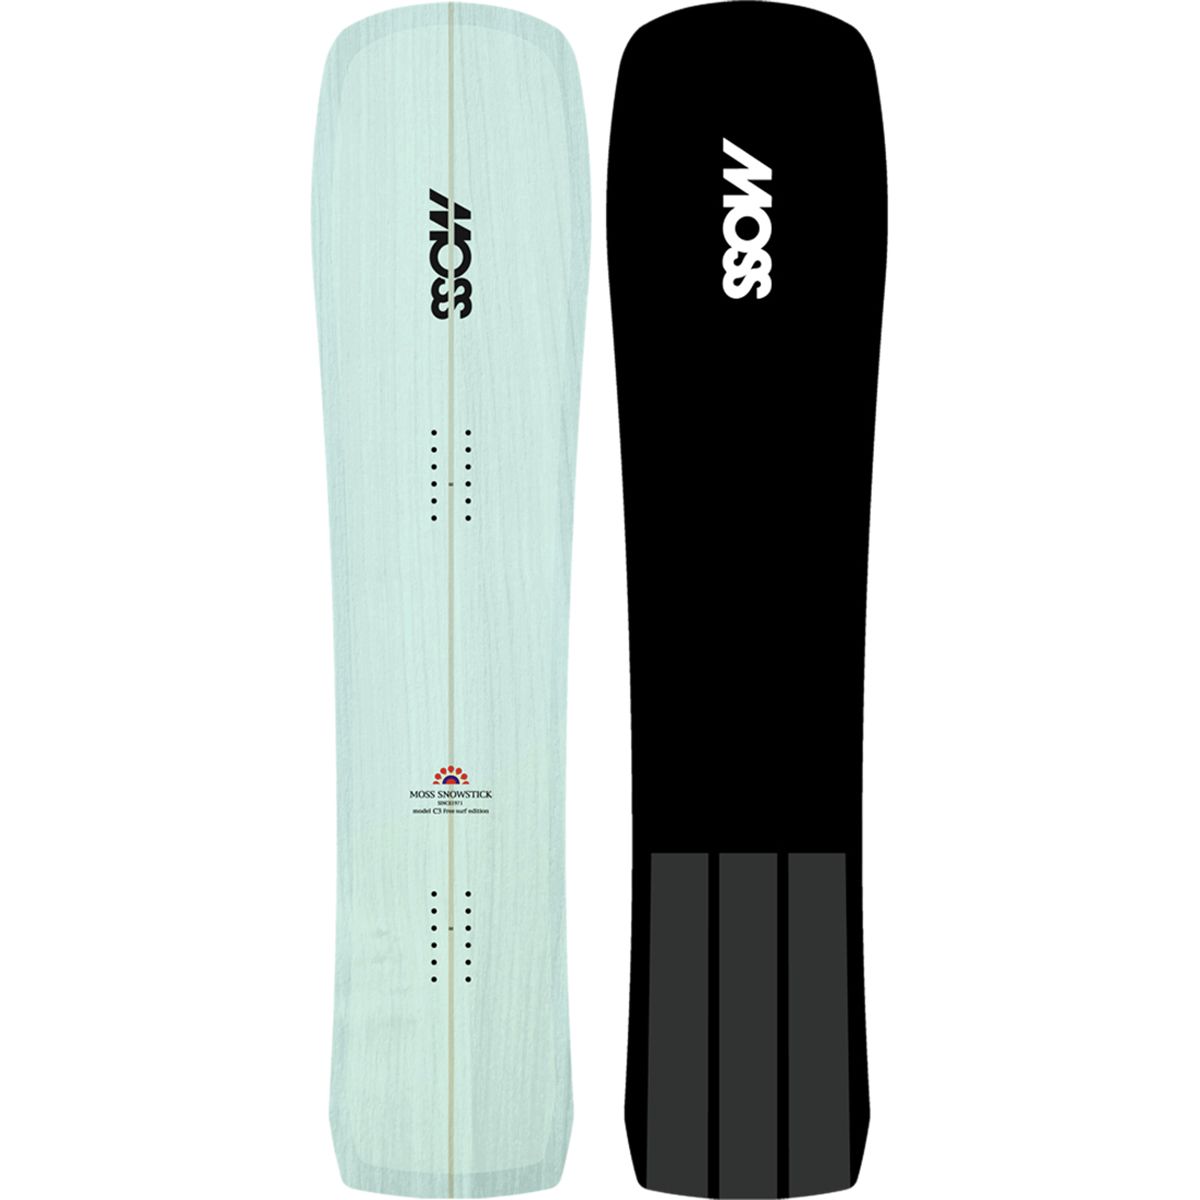 Moss Snowstick C3 Snowstick Snowboard - Snowboard